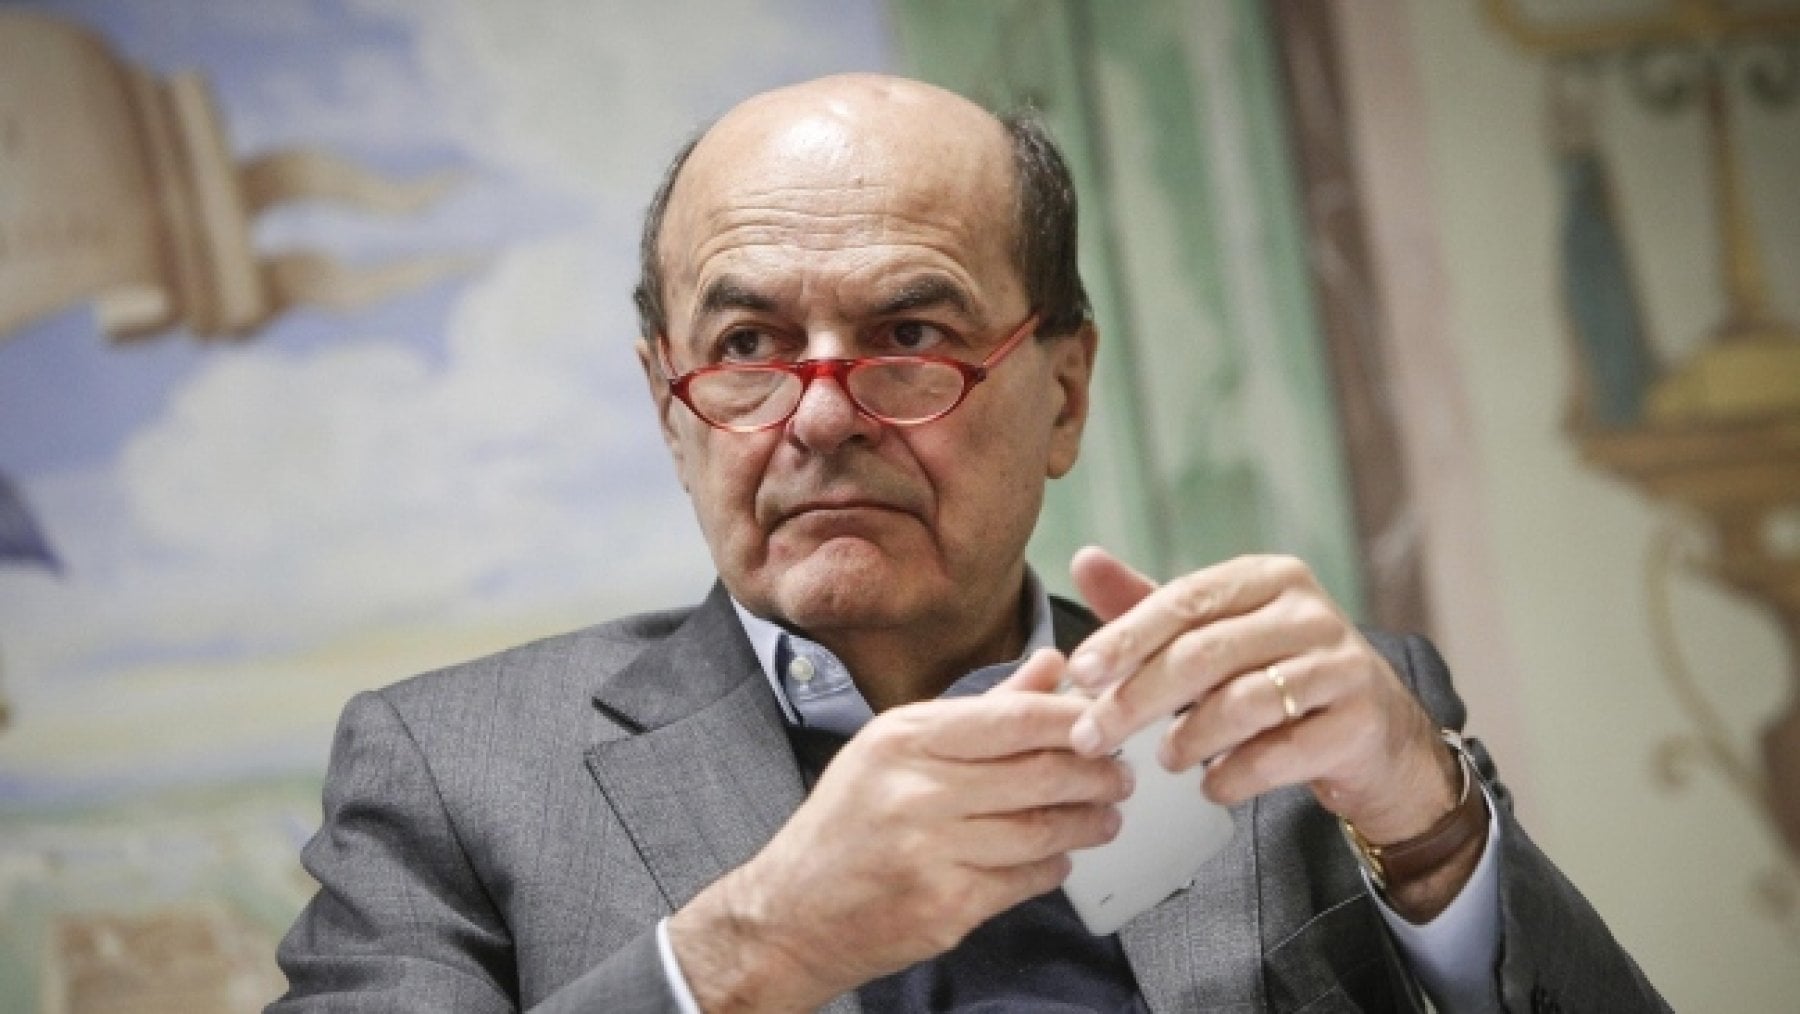 Bersani avverte: "Meloni e La Russa tradiscono la Costituzione". E su Elly Schlein...